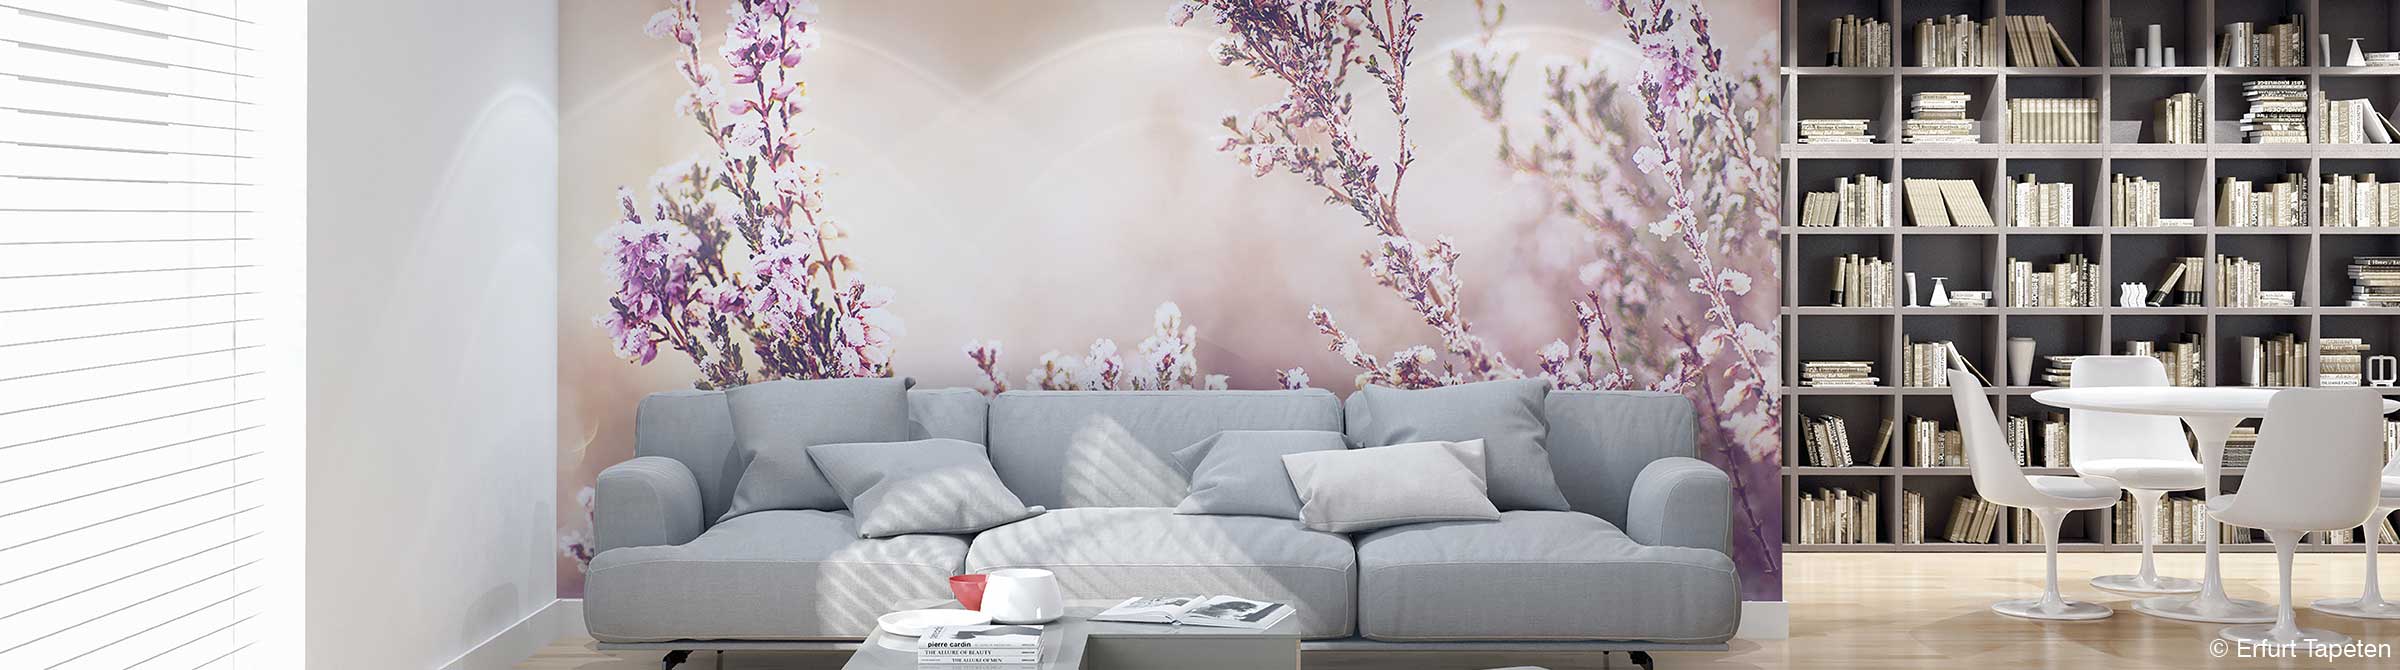 Wohnzimmerwand mit Fototapete Blumen